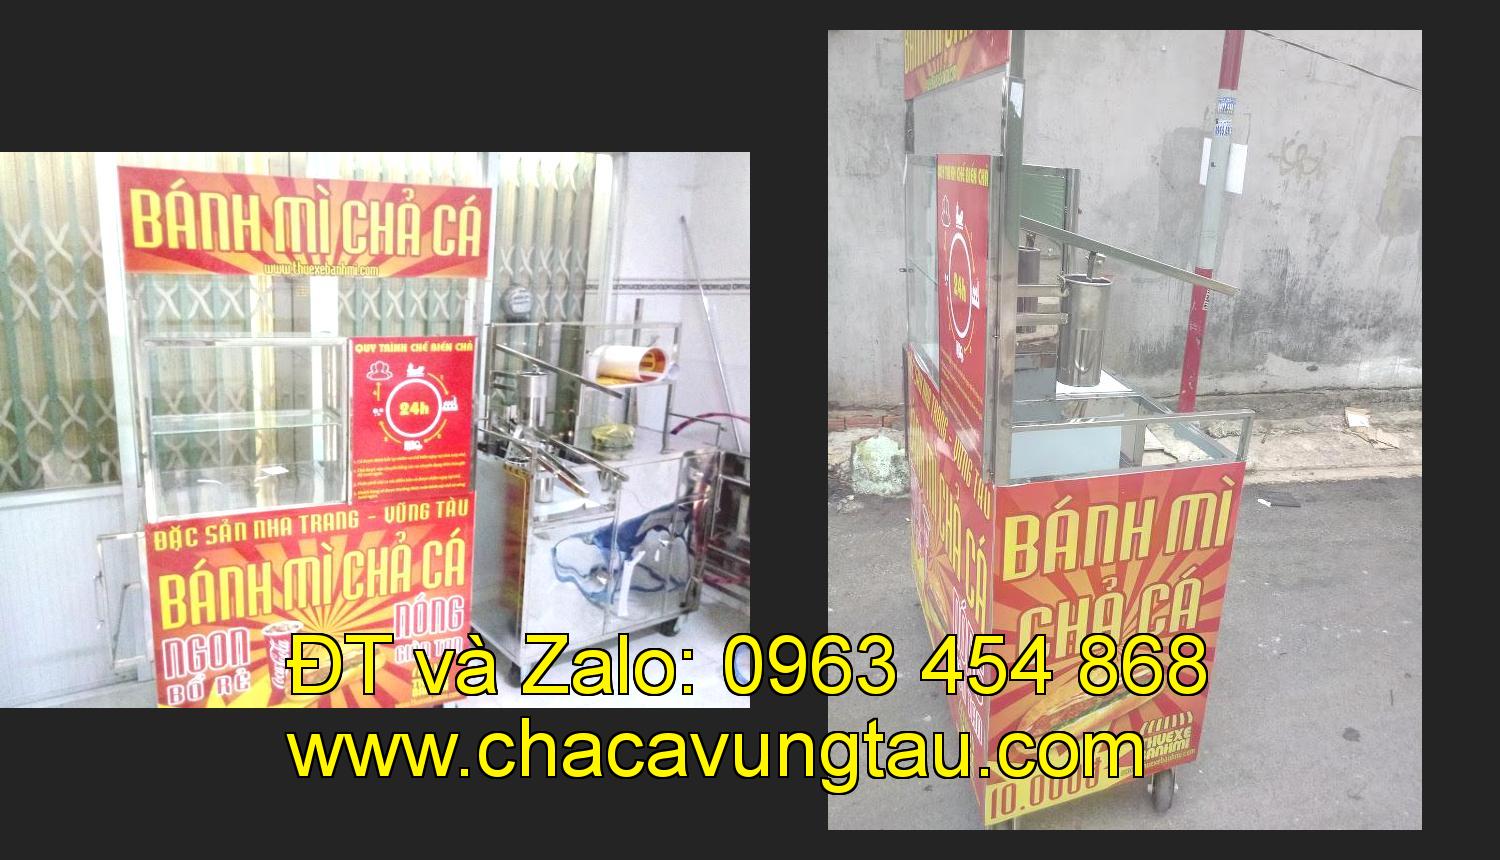 xe bánh mì chả cá inox tại tỉnh An Giang